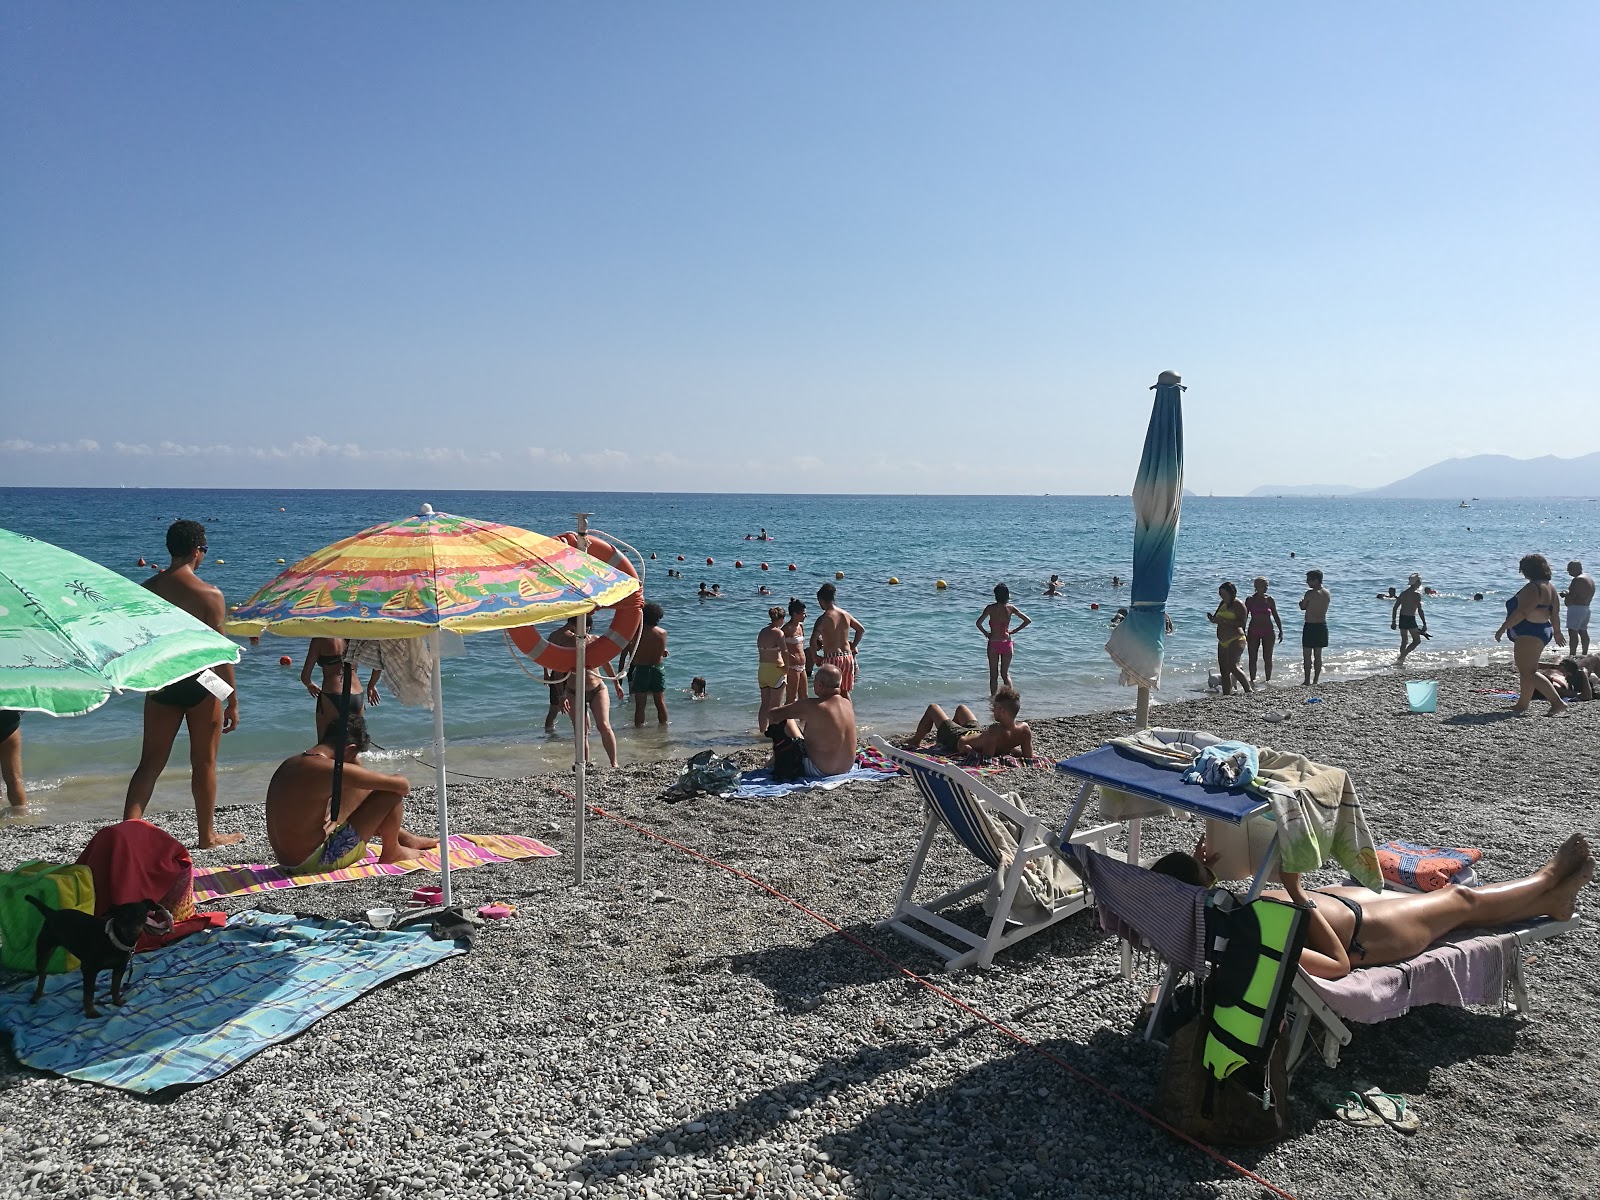 Spiaggia di Borgio'in fotoğrafı - rahatlamayı sevenler arasında popüler bir yer